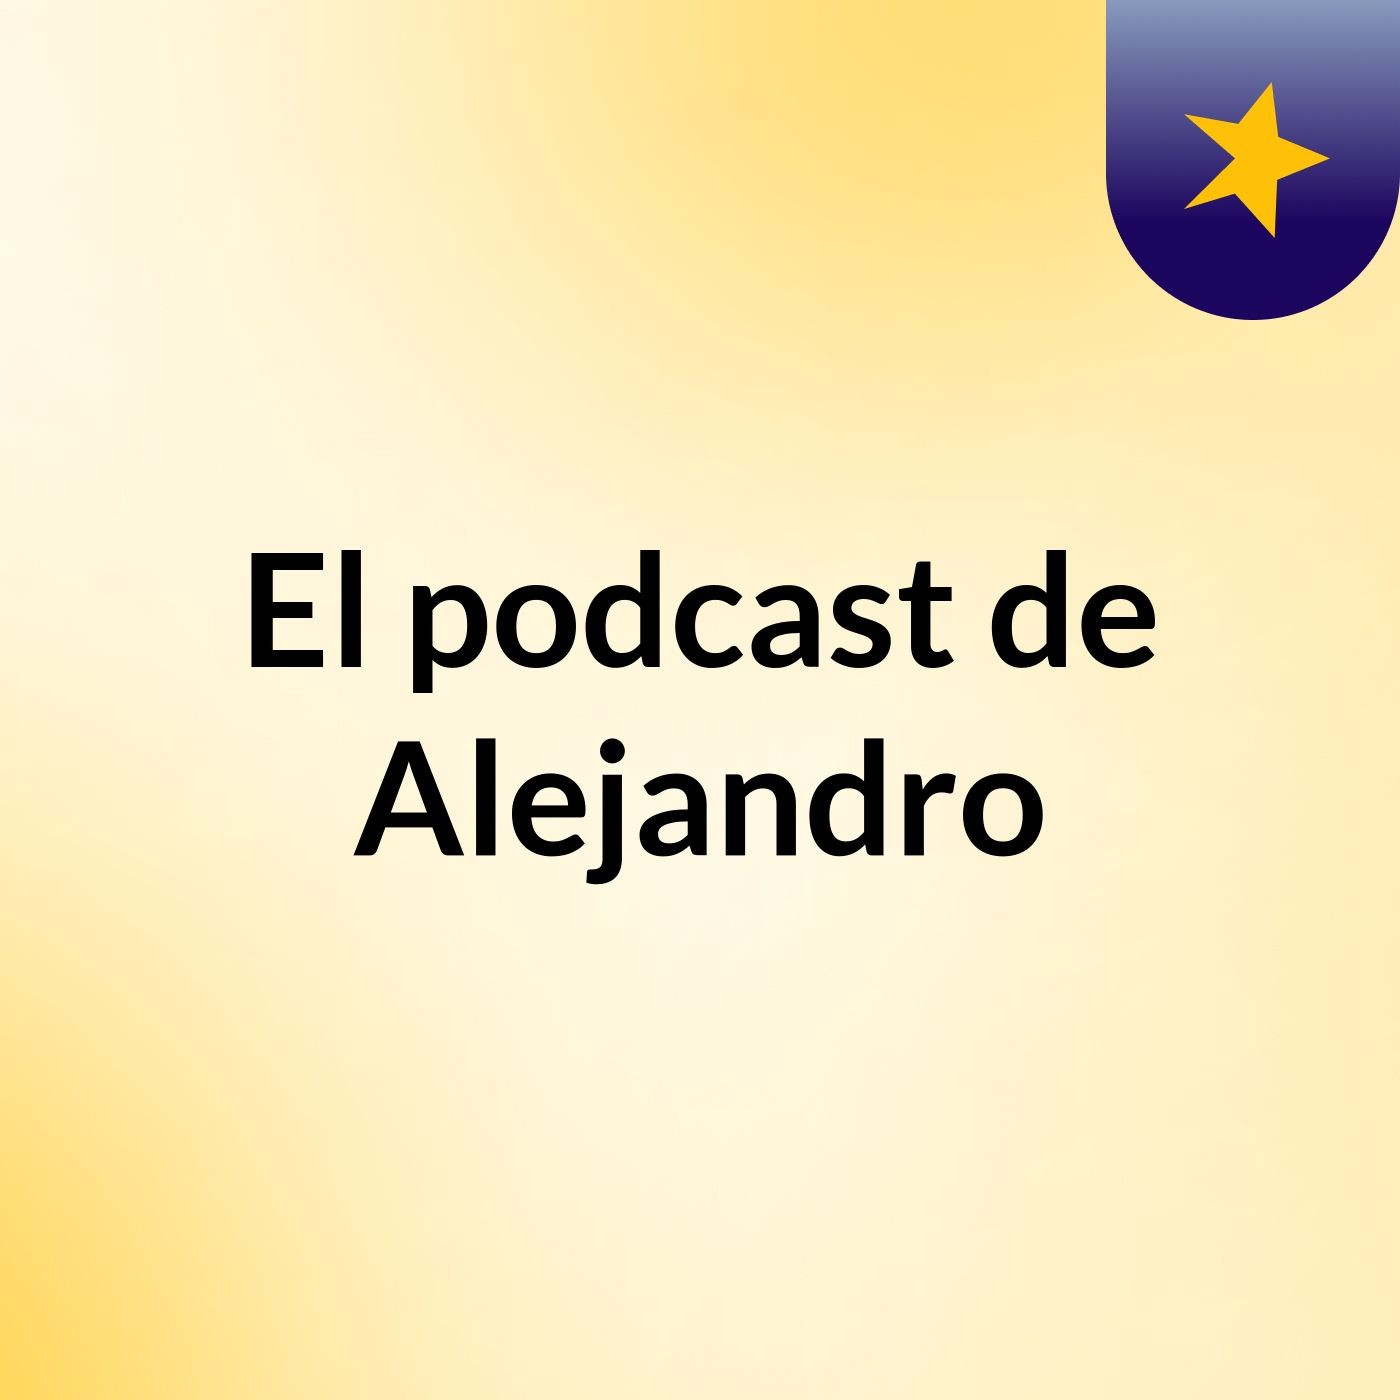 El podcast de Alejandro